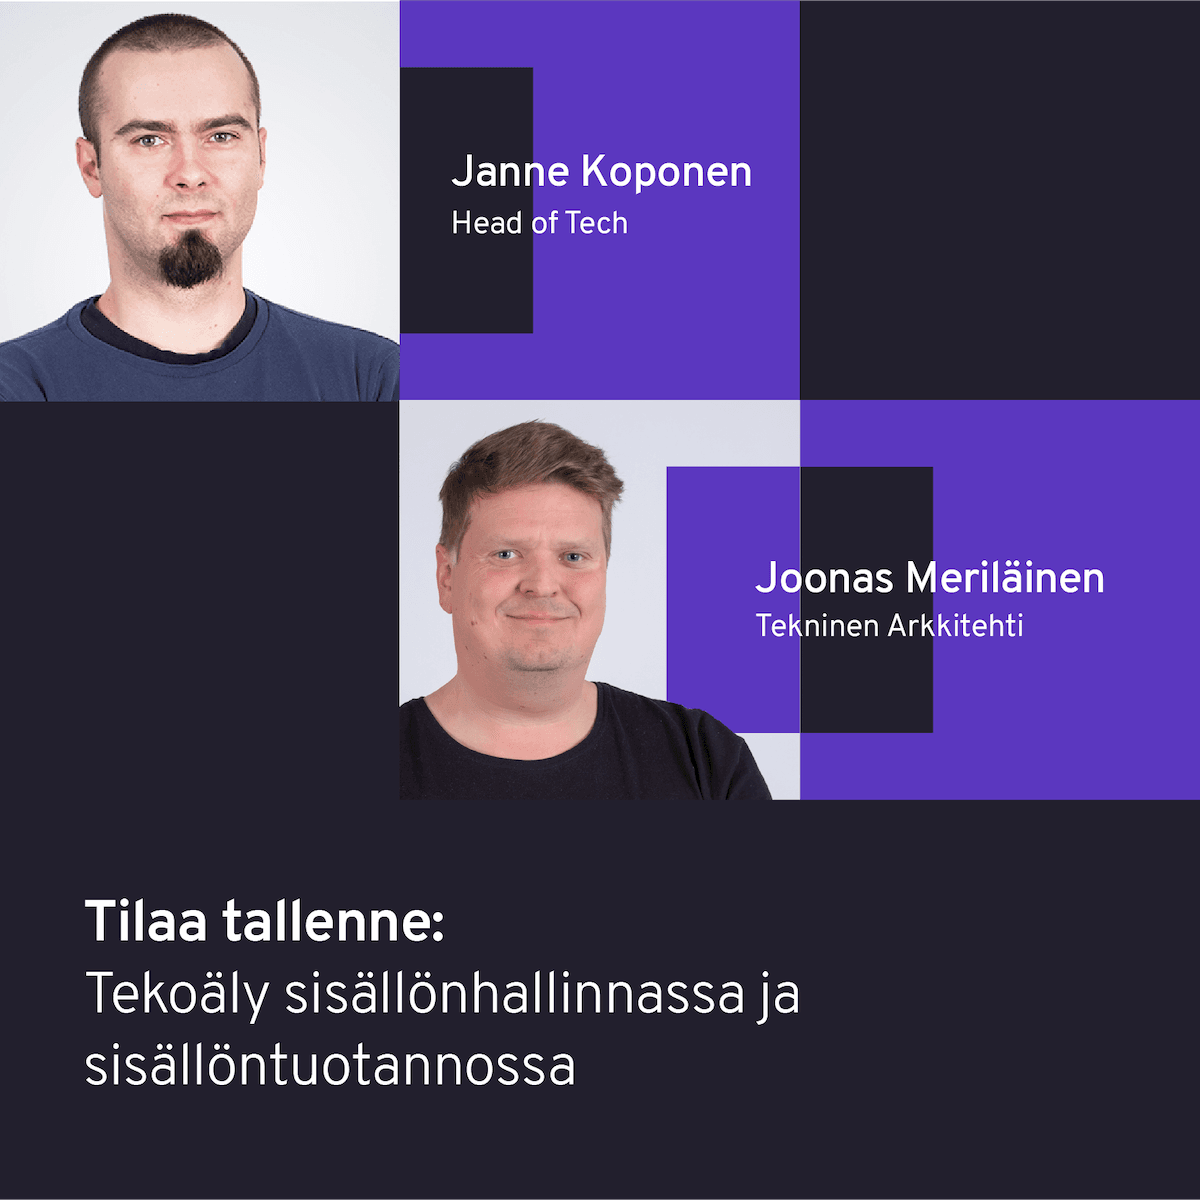 AI experts Janne Koponen and Joonas Meriläinen 